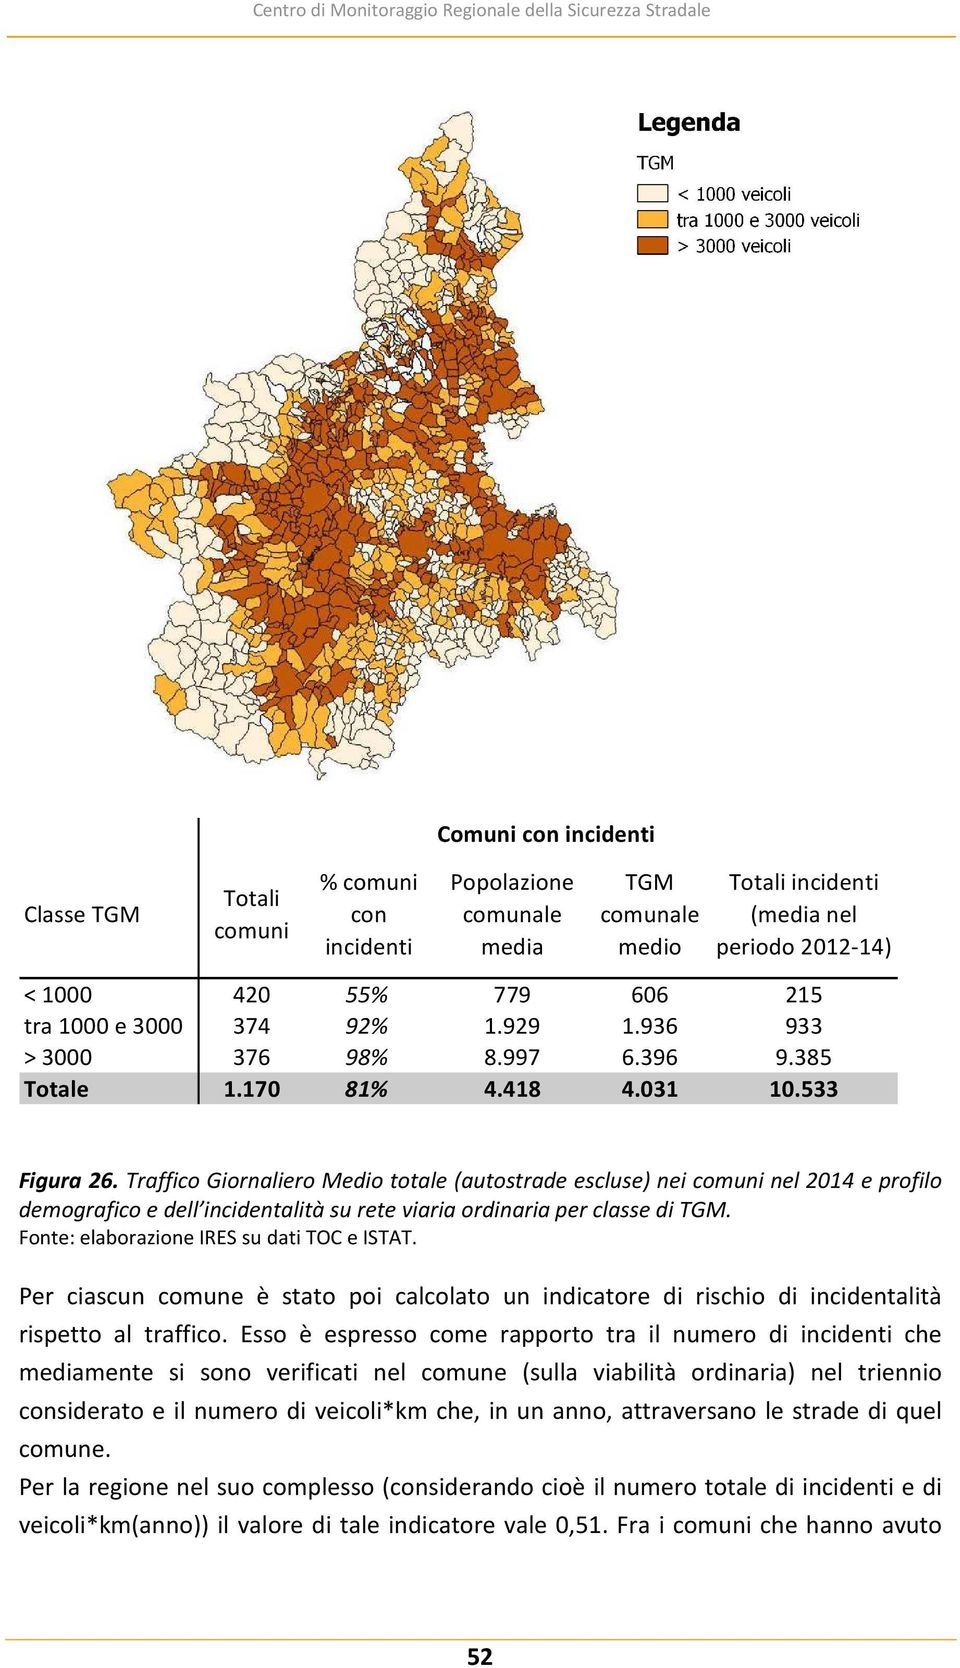 Traffico Giornaliero Medio totale (autostrade escluse) nei comuni nel 2014 e profilo demografico e dell incidentalità su rete viaria ordinaria per classe di TGM.